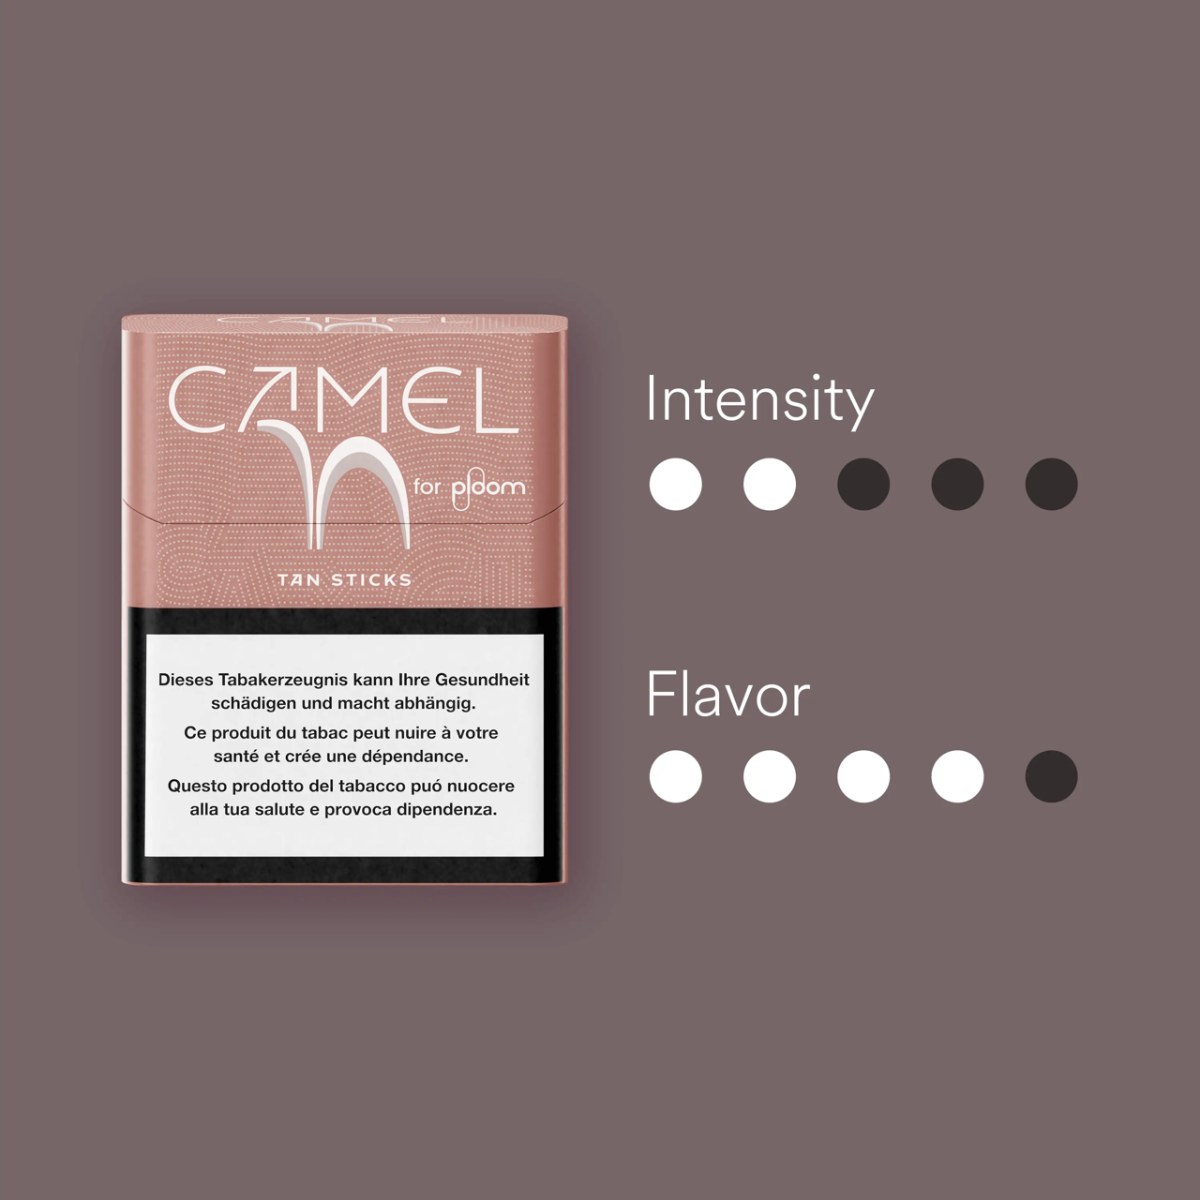 Camel Tan sticks für ploom Eigenschaften
